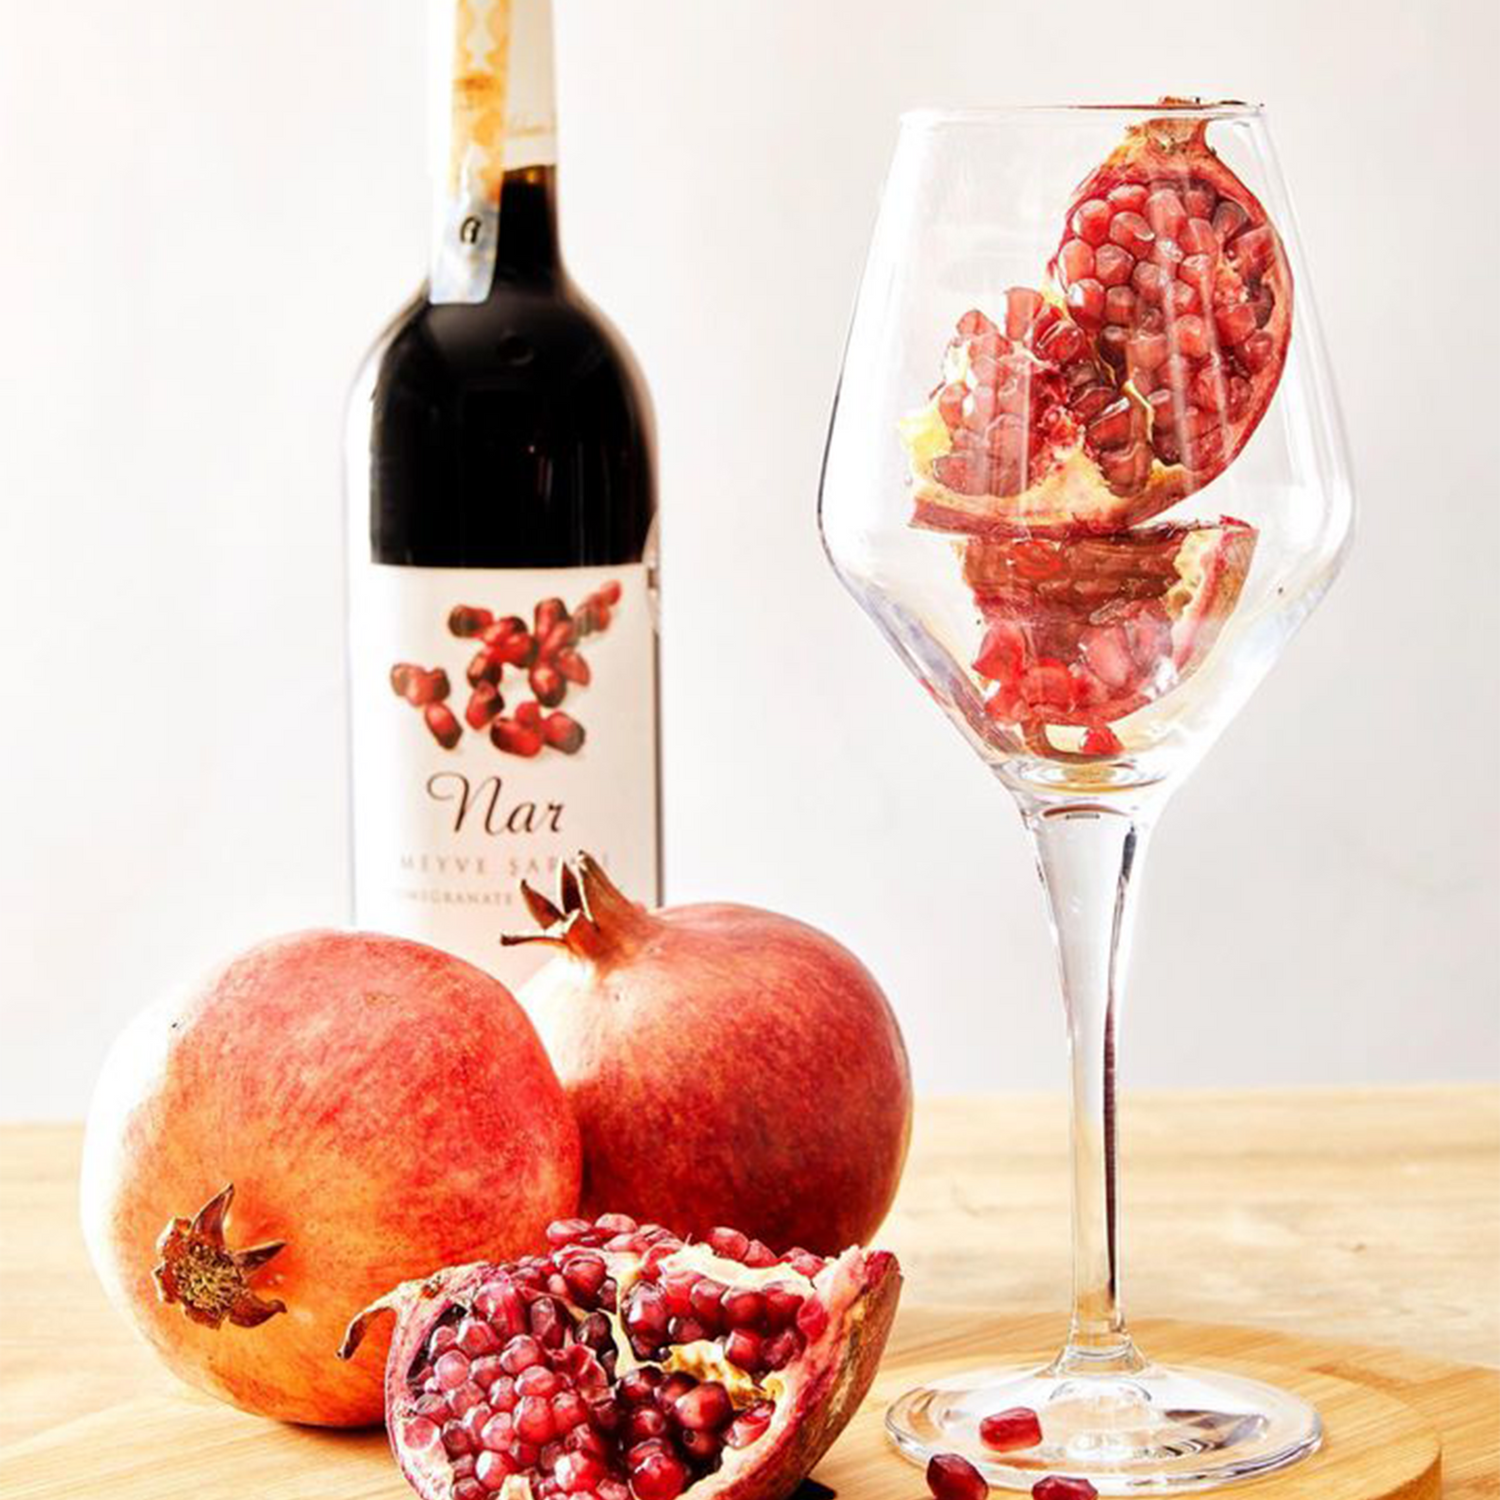 クトマン ザクロワイン 750ml トルコ フルーツワイン | Kutman Nar Meyve Şarabı | Pomegranate Fruit Wine